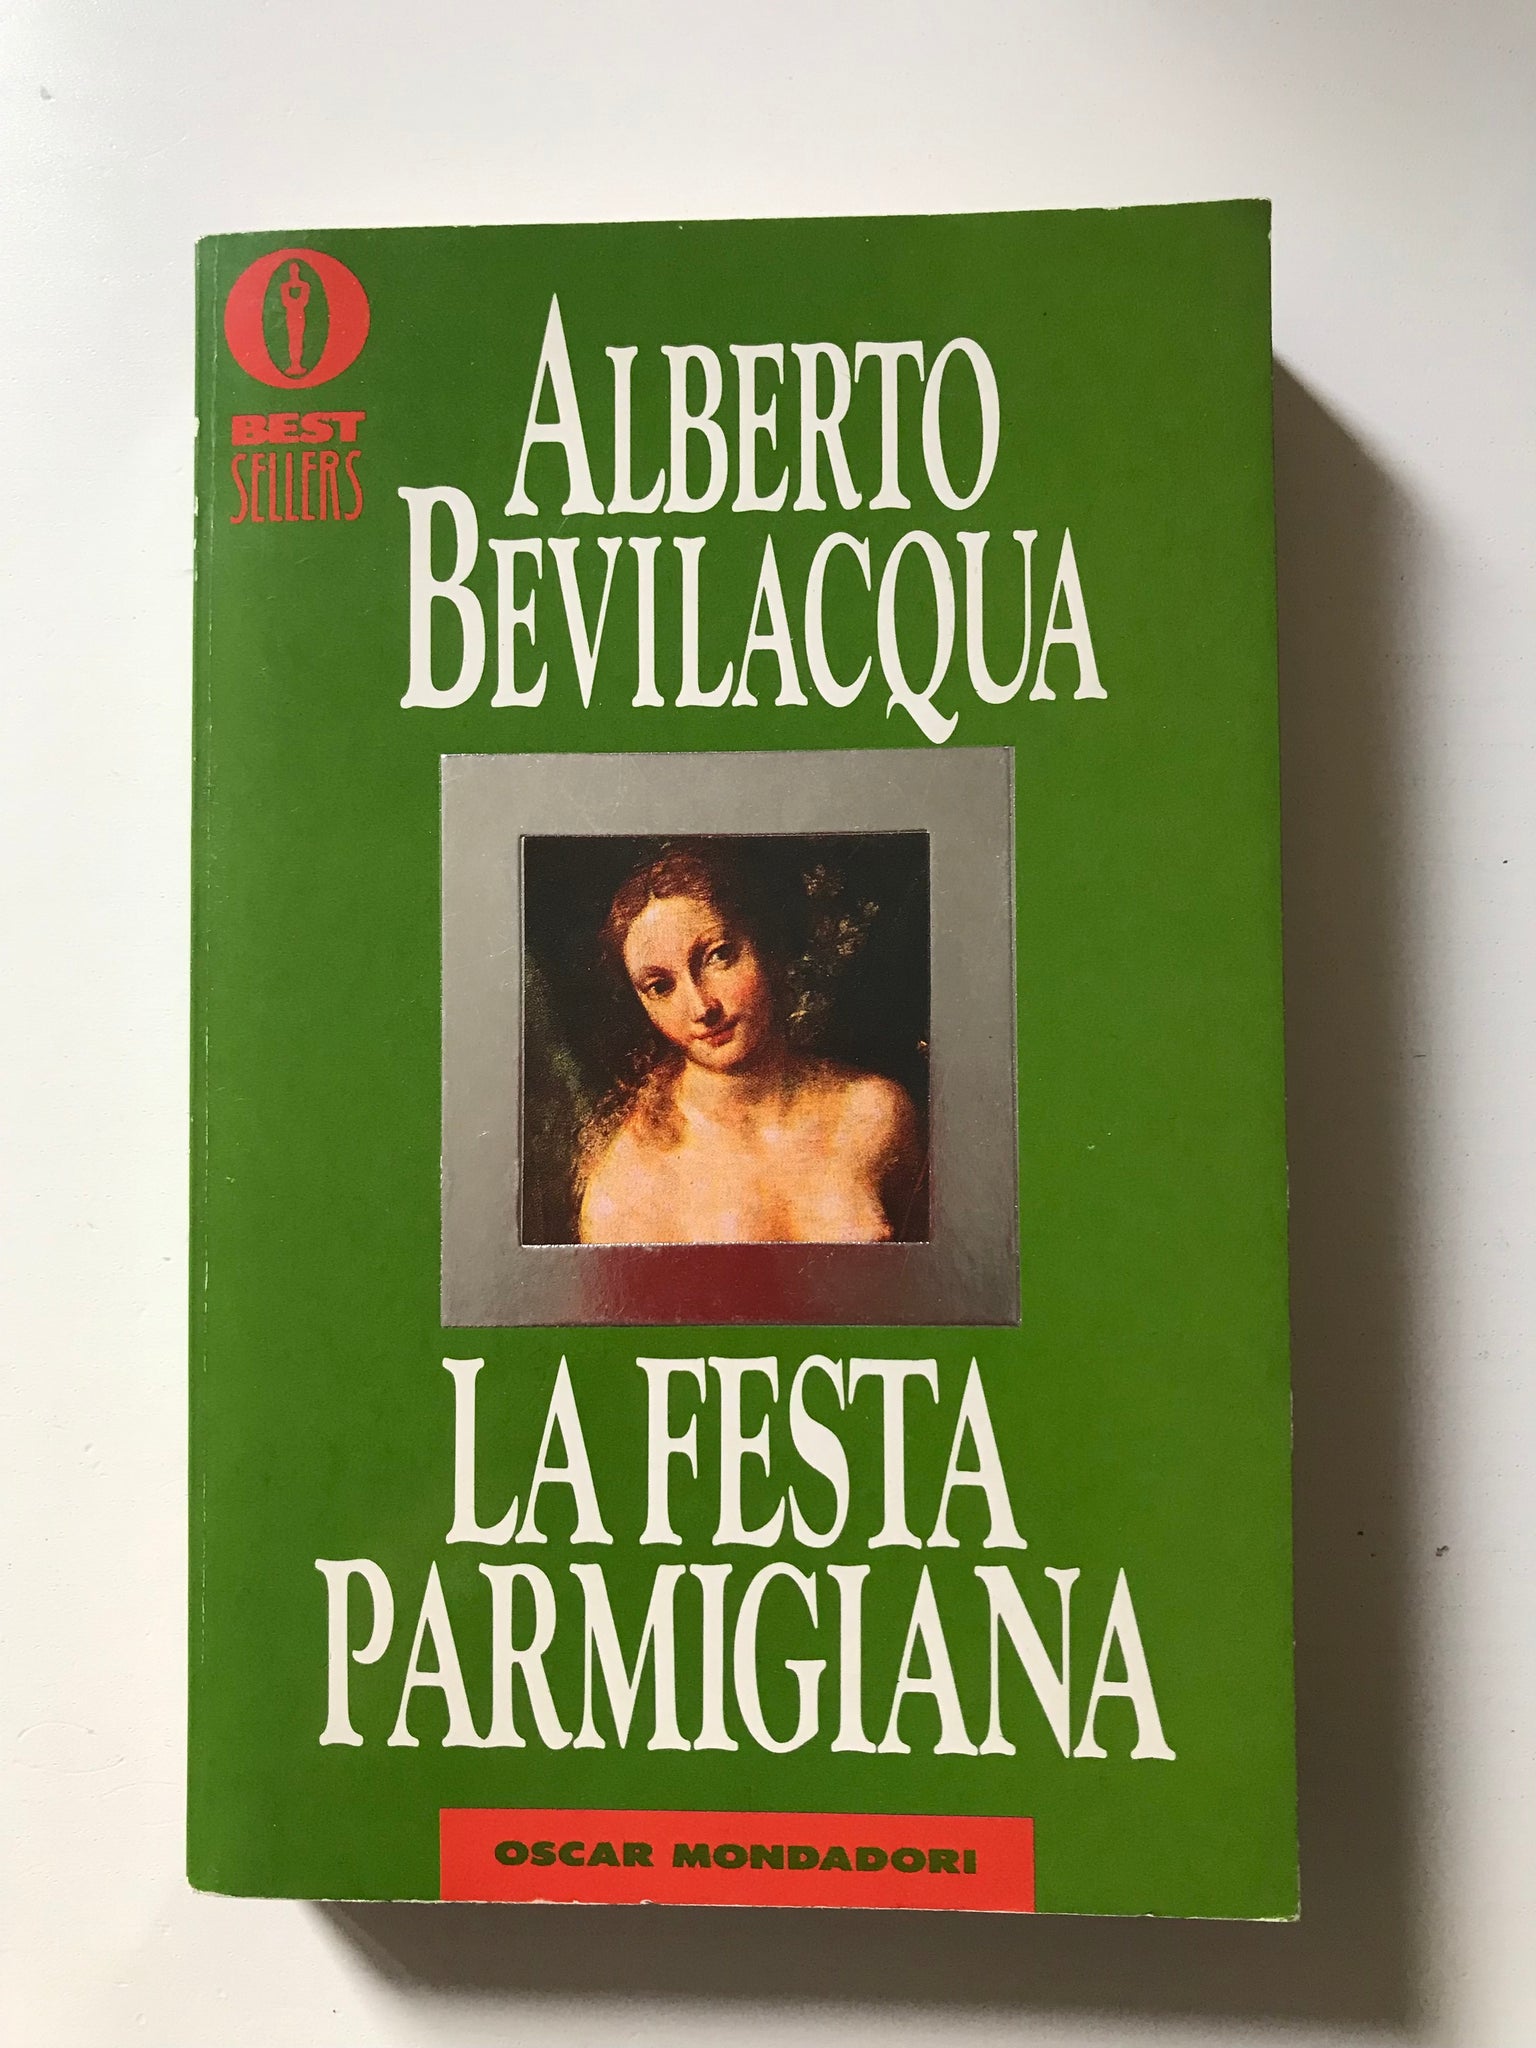 Alberto Bevilacqua - La festa parmigiana